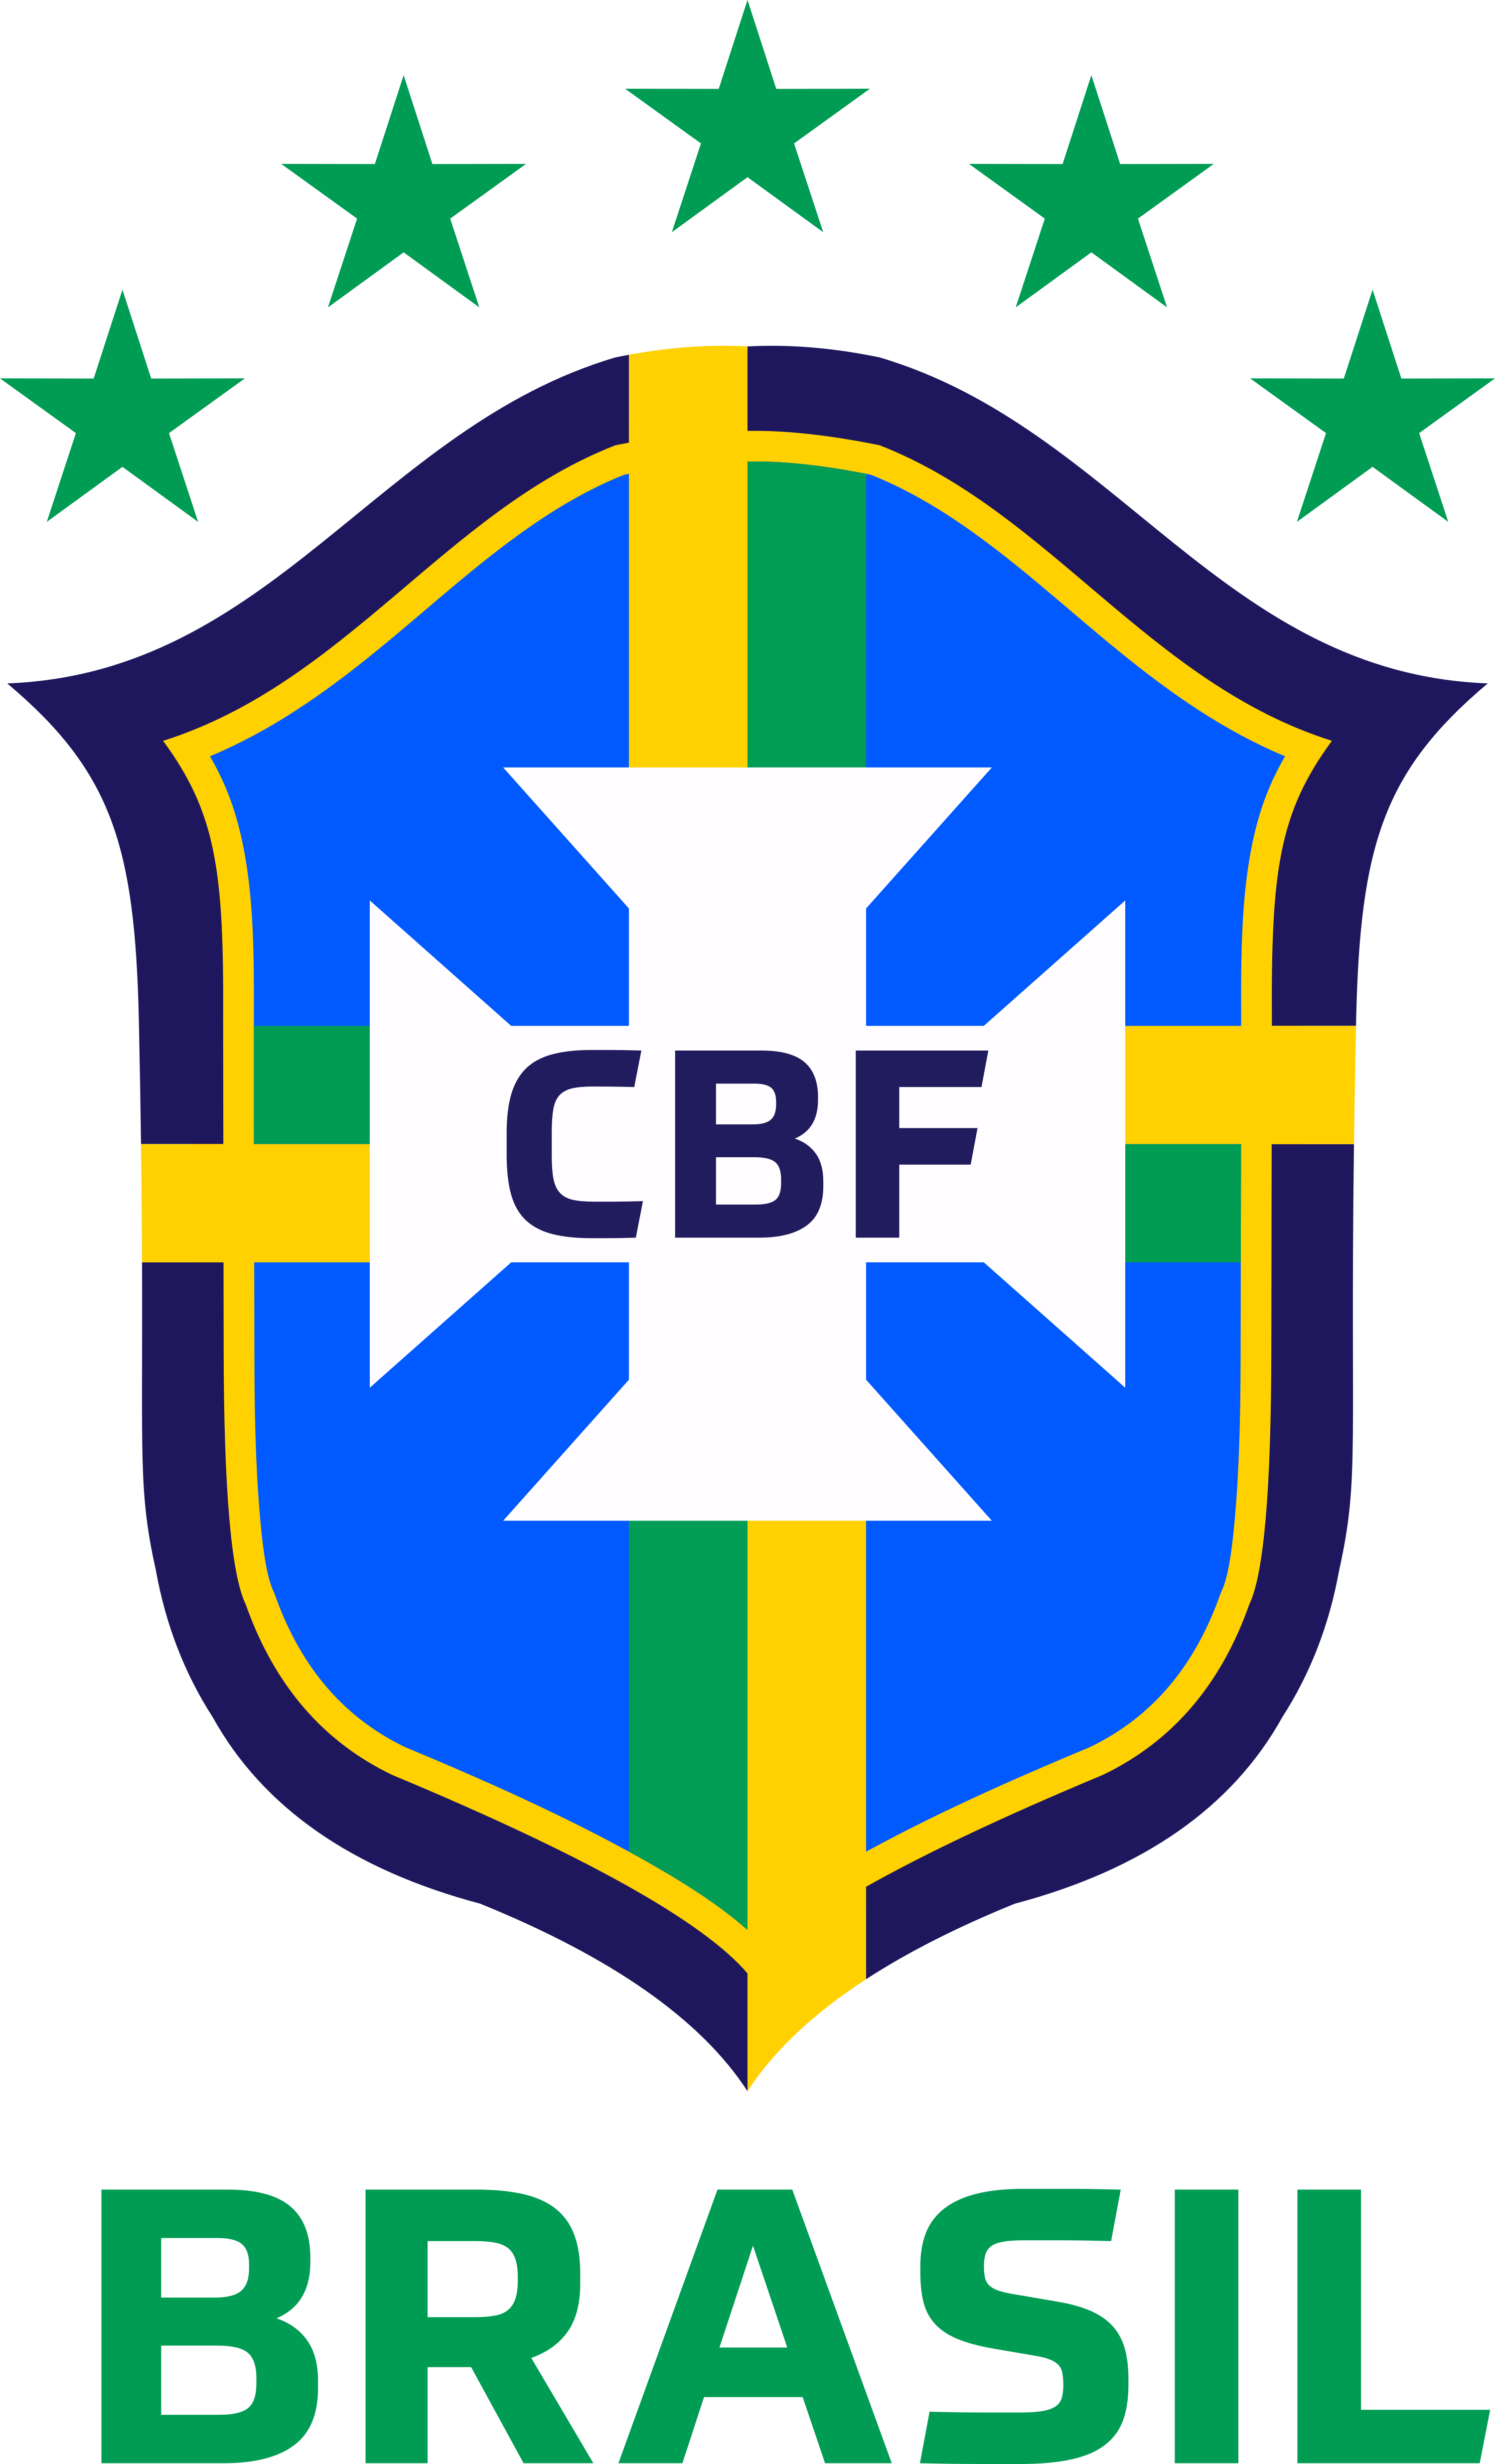 brazil national football team logo 7 - Brazil National Football Team Logo